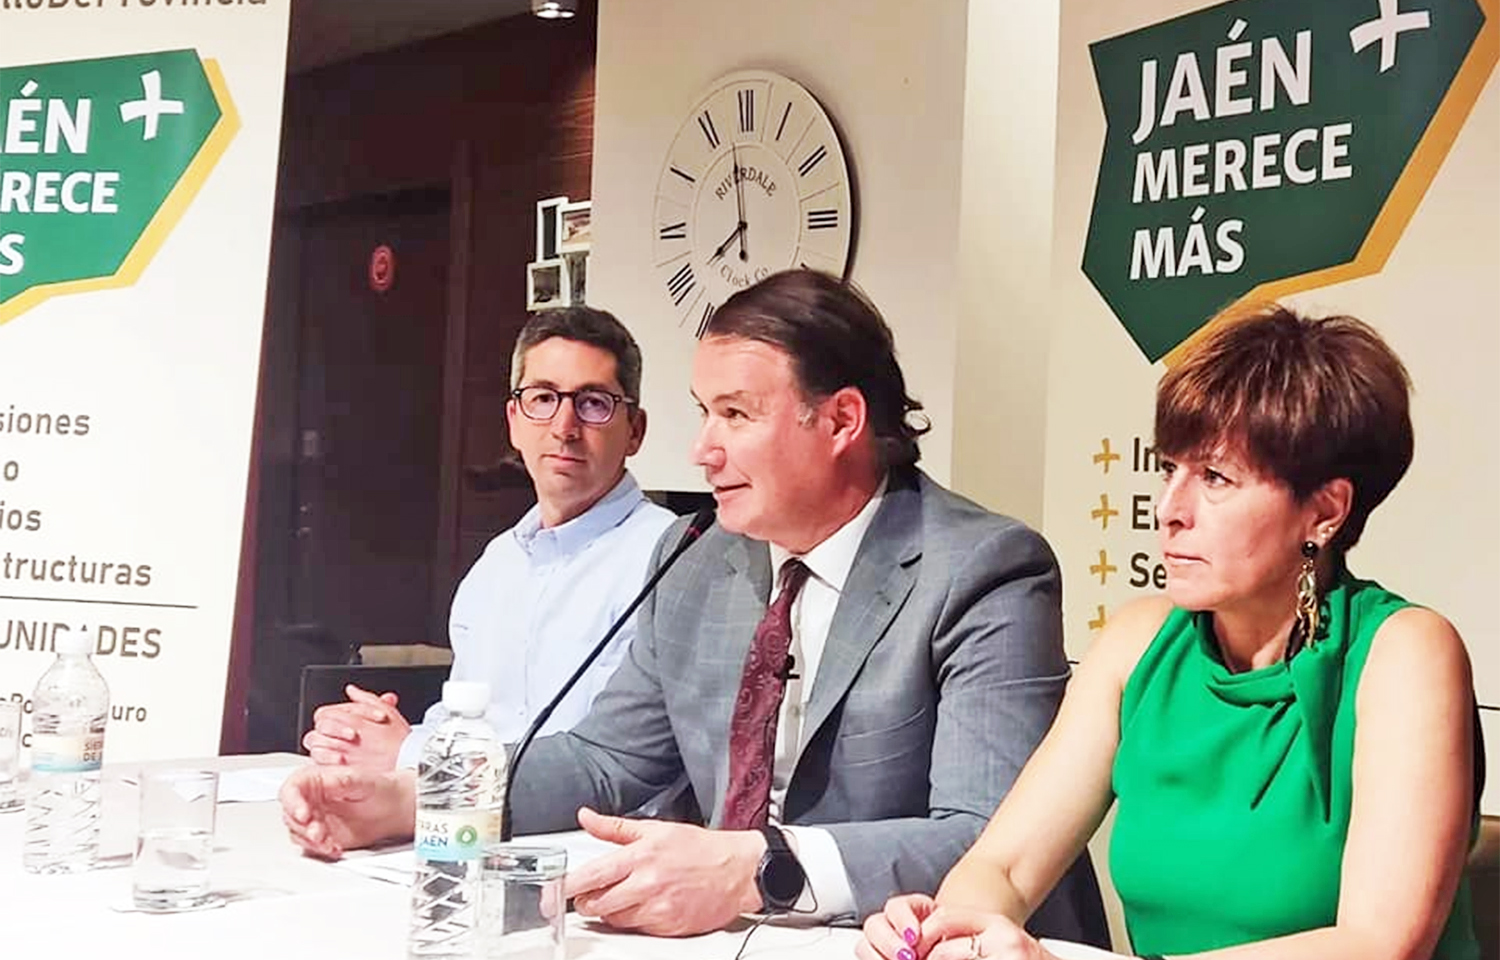 El presidente de Jaén Merece+, Juan Manuel Camacho, advierte que su formación no va a aceptar que nadie le marque la agenda en la negociación